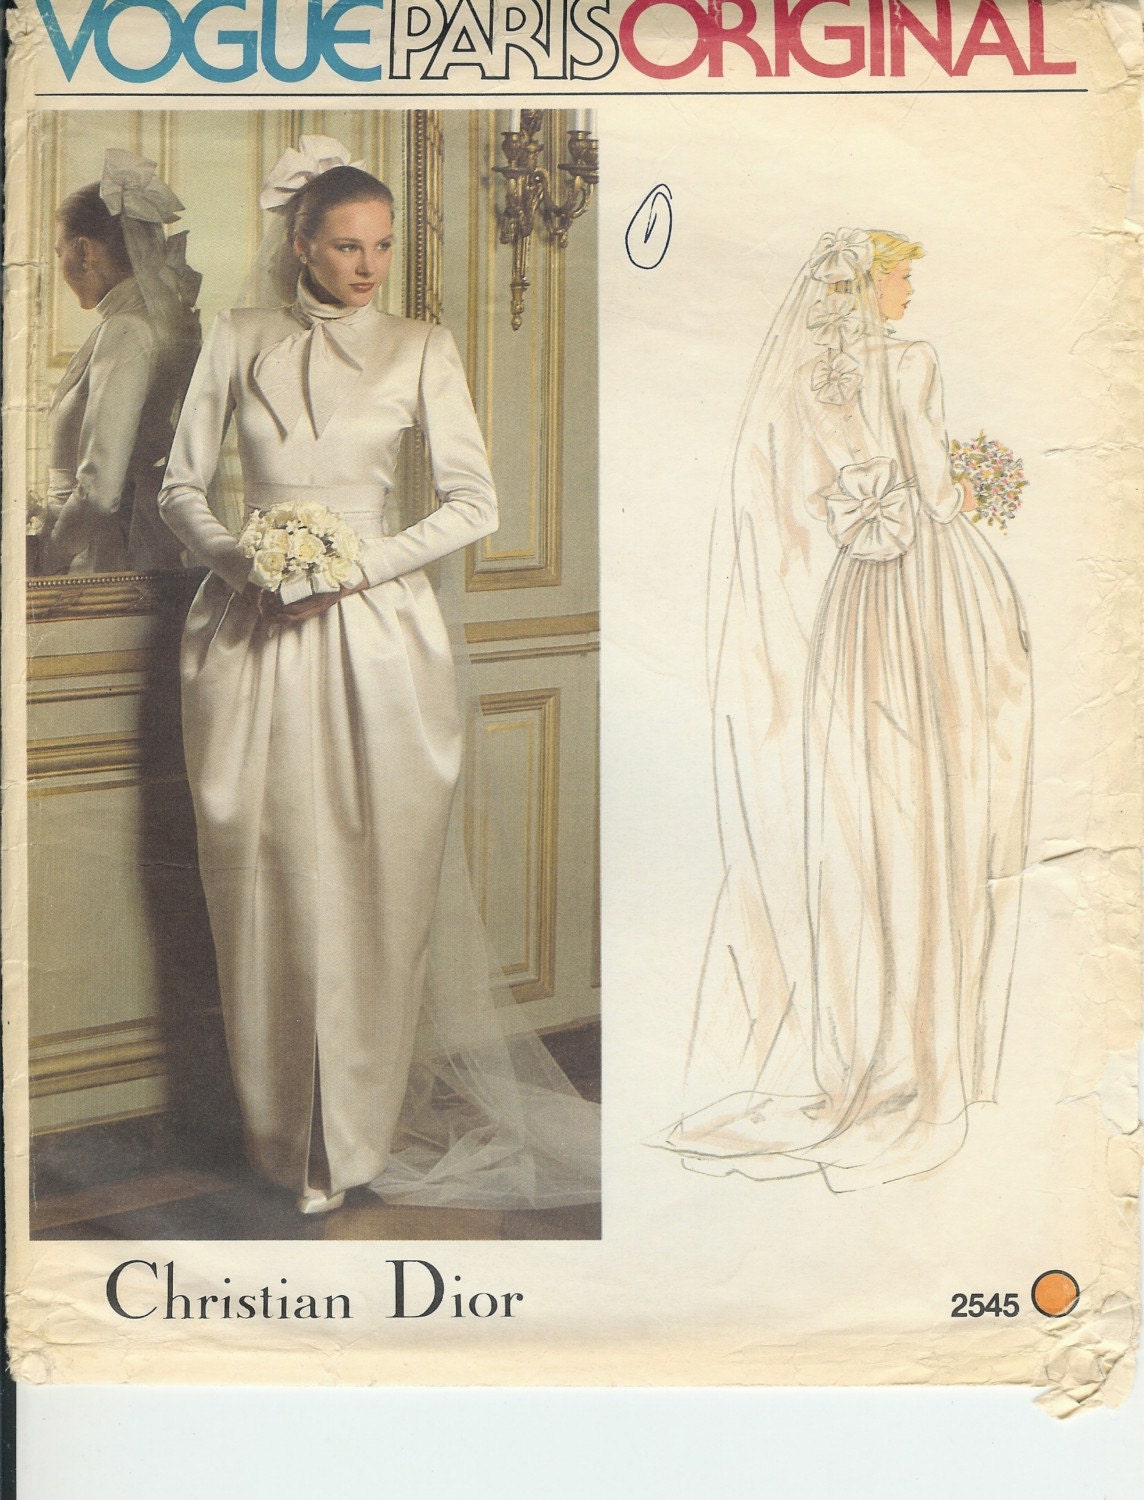 SALE Vintage Vogue Wedding Gown Christian Dior Paris Original